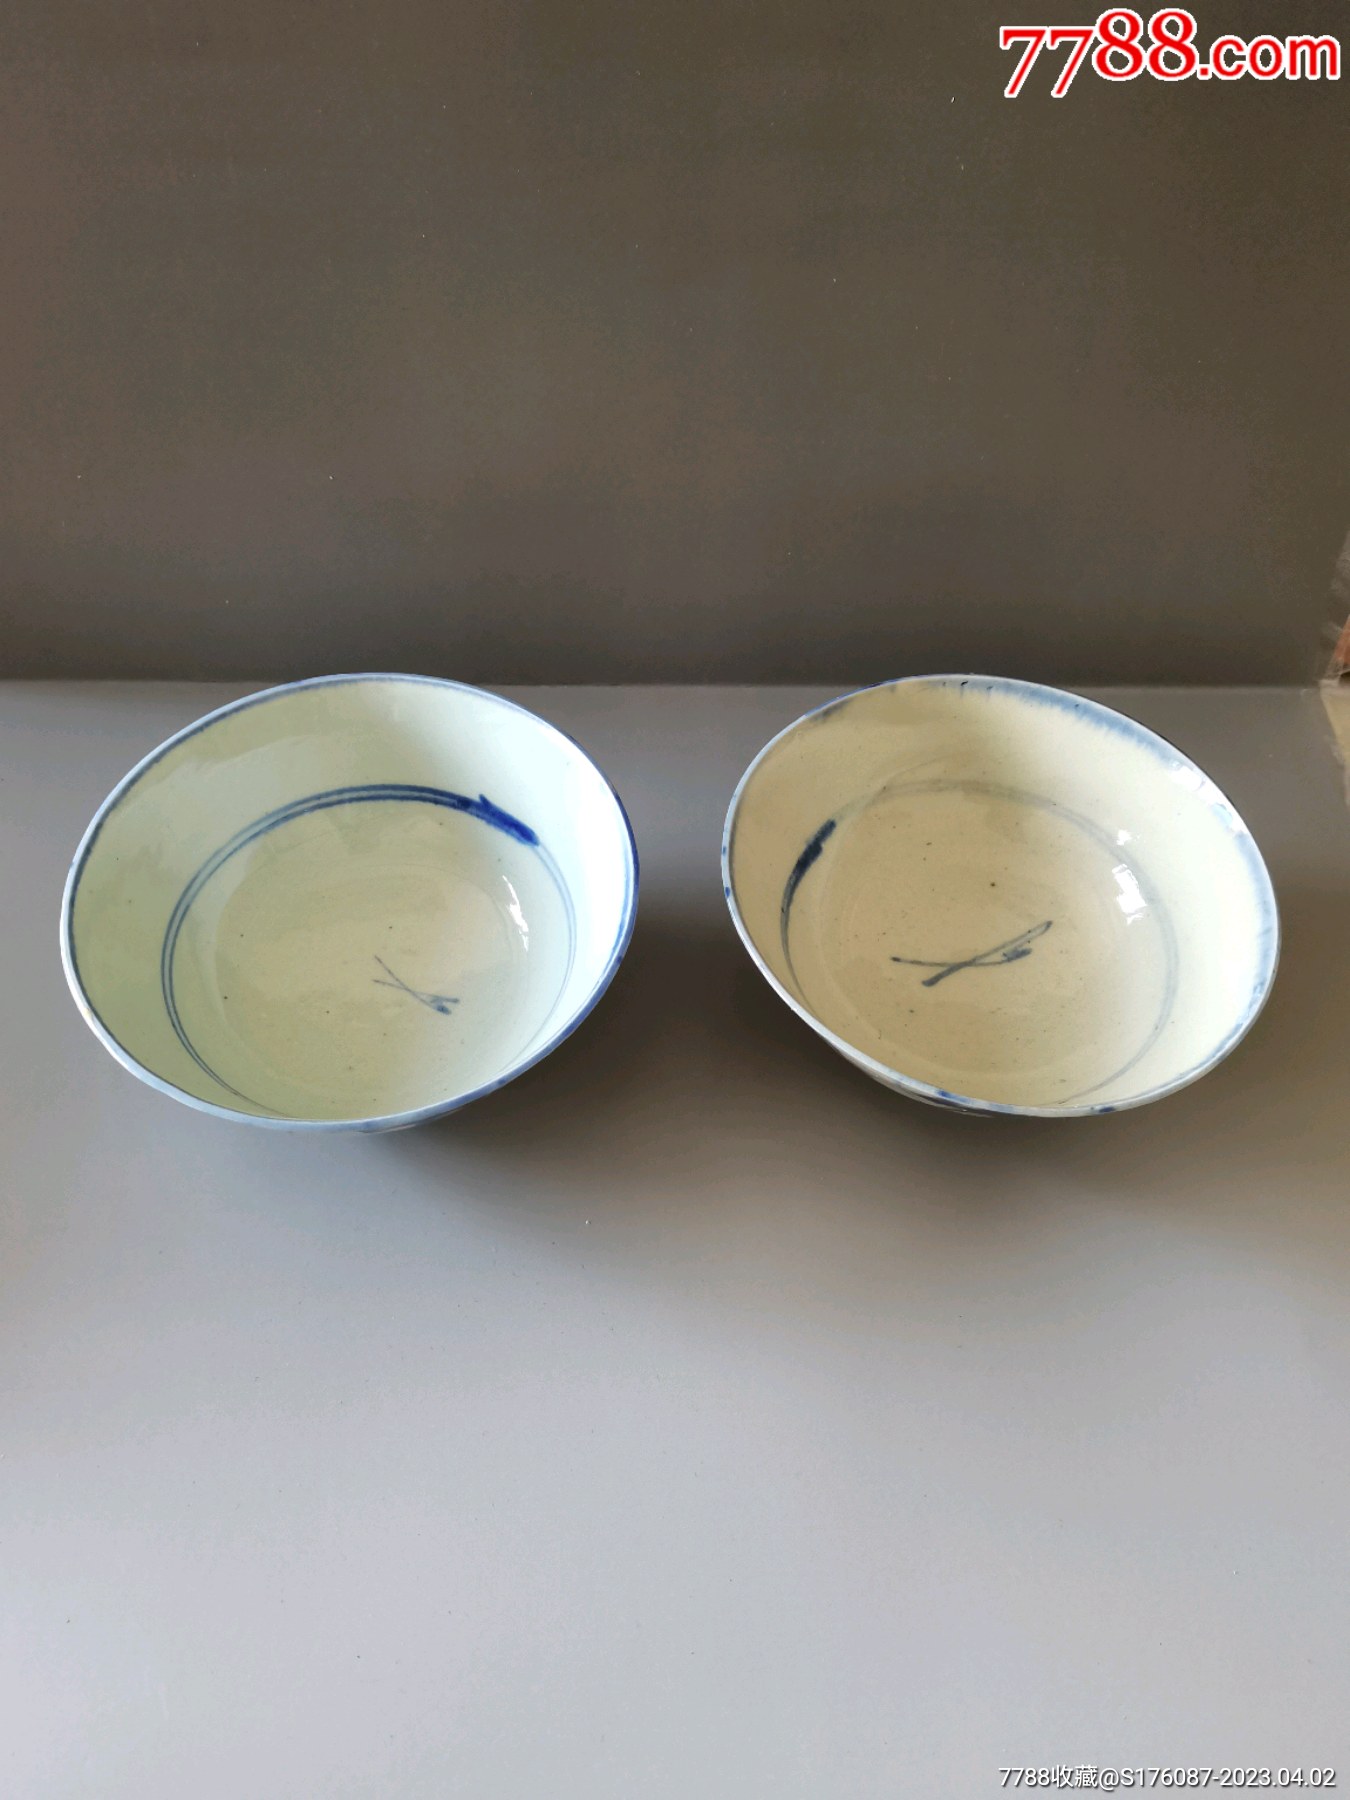 南宋景德镇窑青白釉刻牡丹婴戏纹碗-青白瓷精品-图片